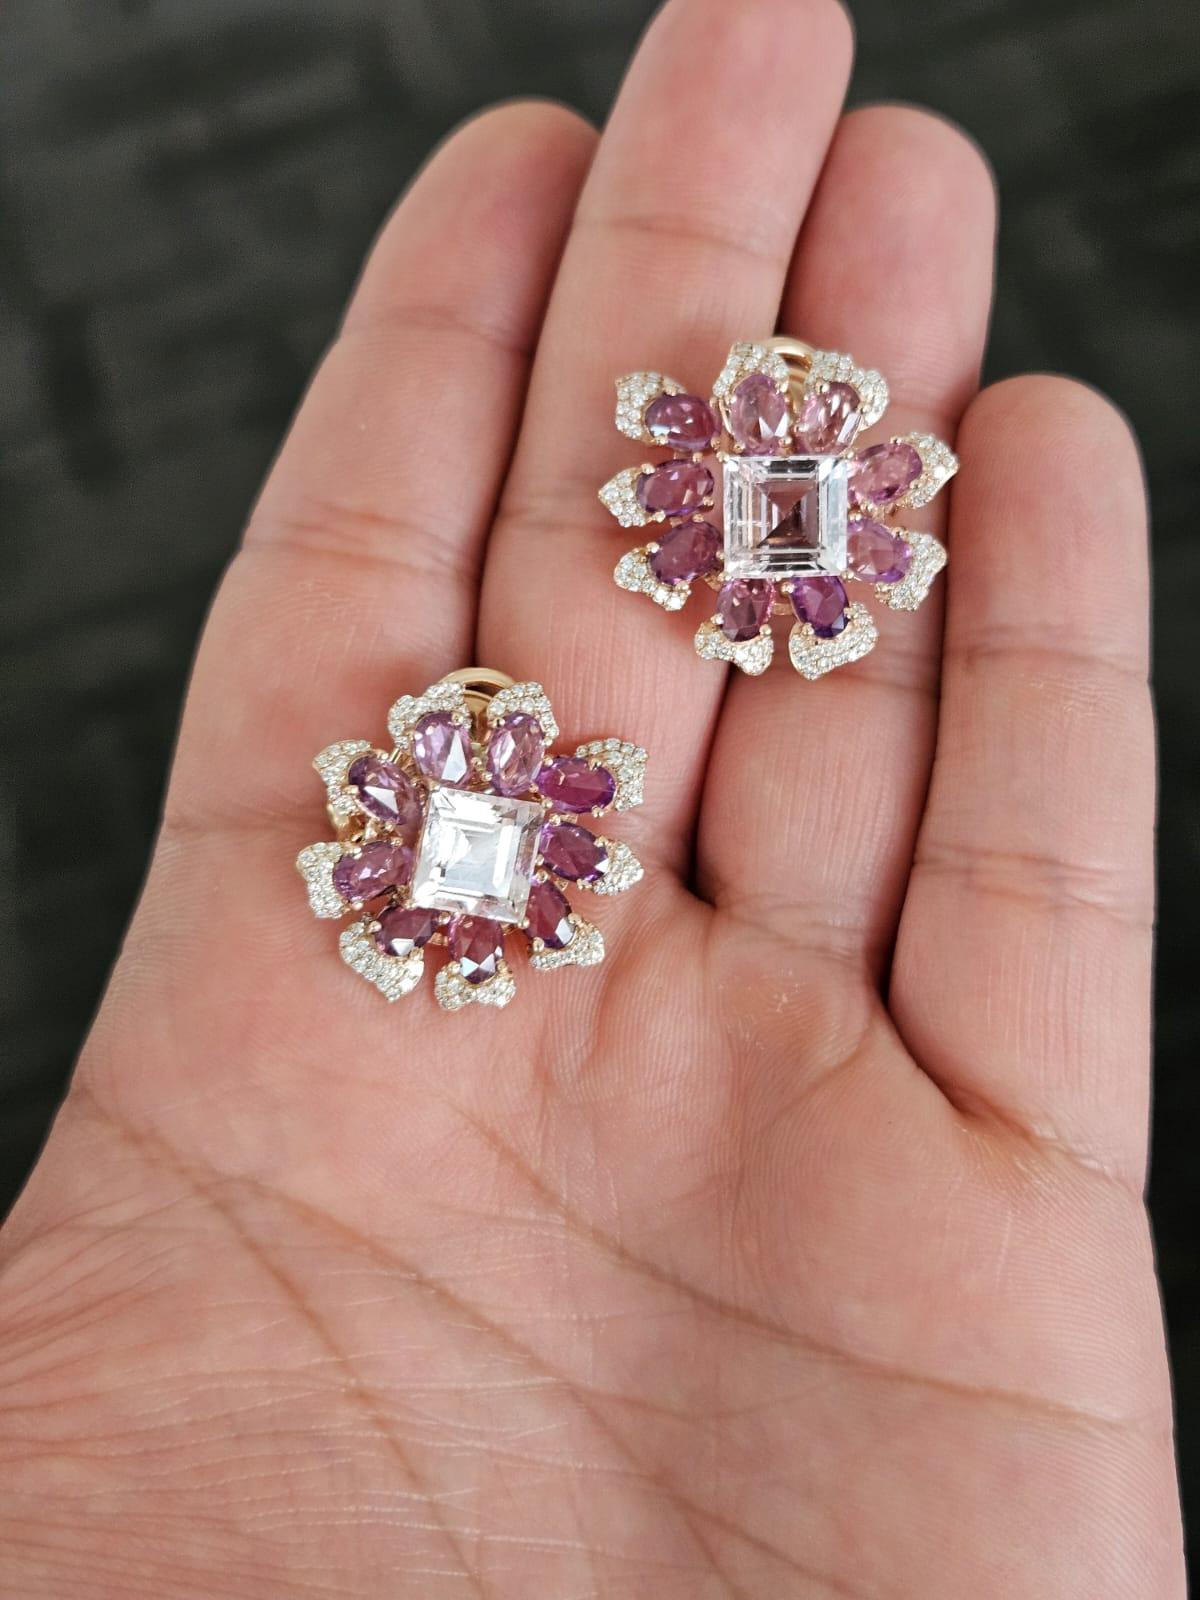 Très belles boucles d'oreilles en or rose 18 carats et diamants avec Morganite et Saphir rose. Le poids des Morganites est de 5.97 carats. Le poids des saphirs roses est de 6,67 carats. Le poids des diamants est de 0,72 carats. Le poids net de l'or